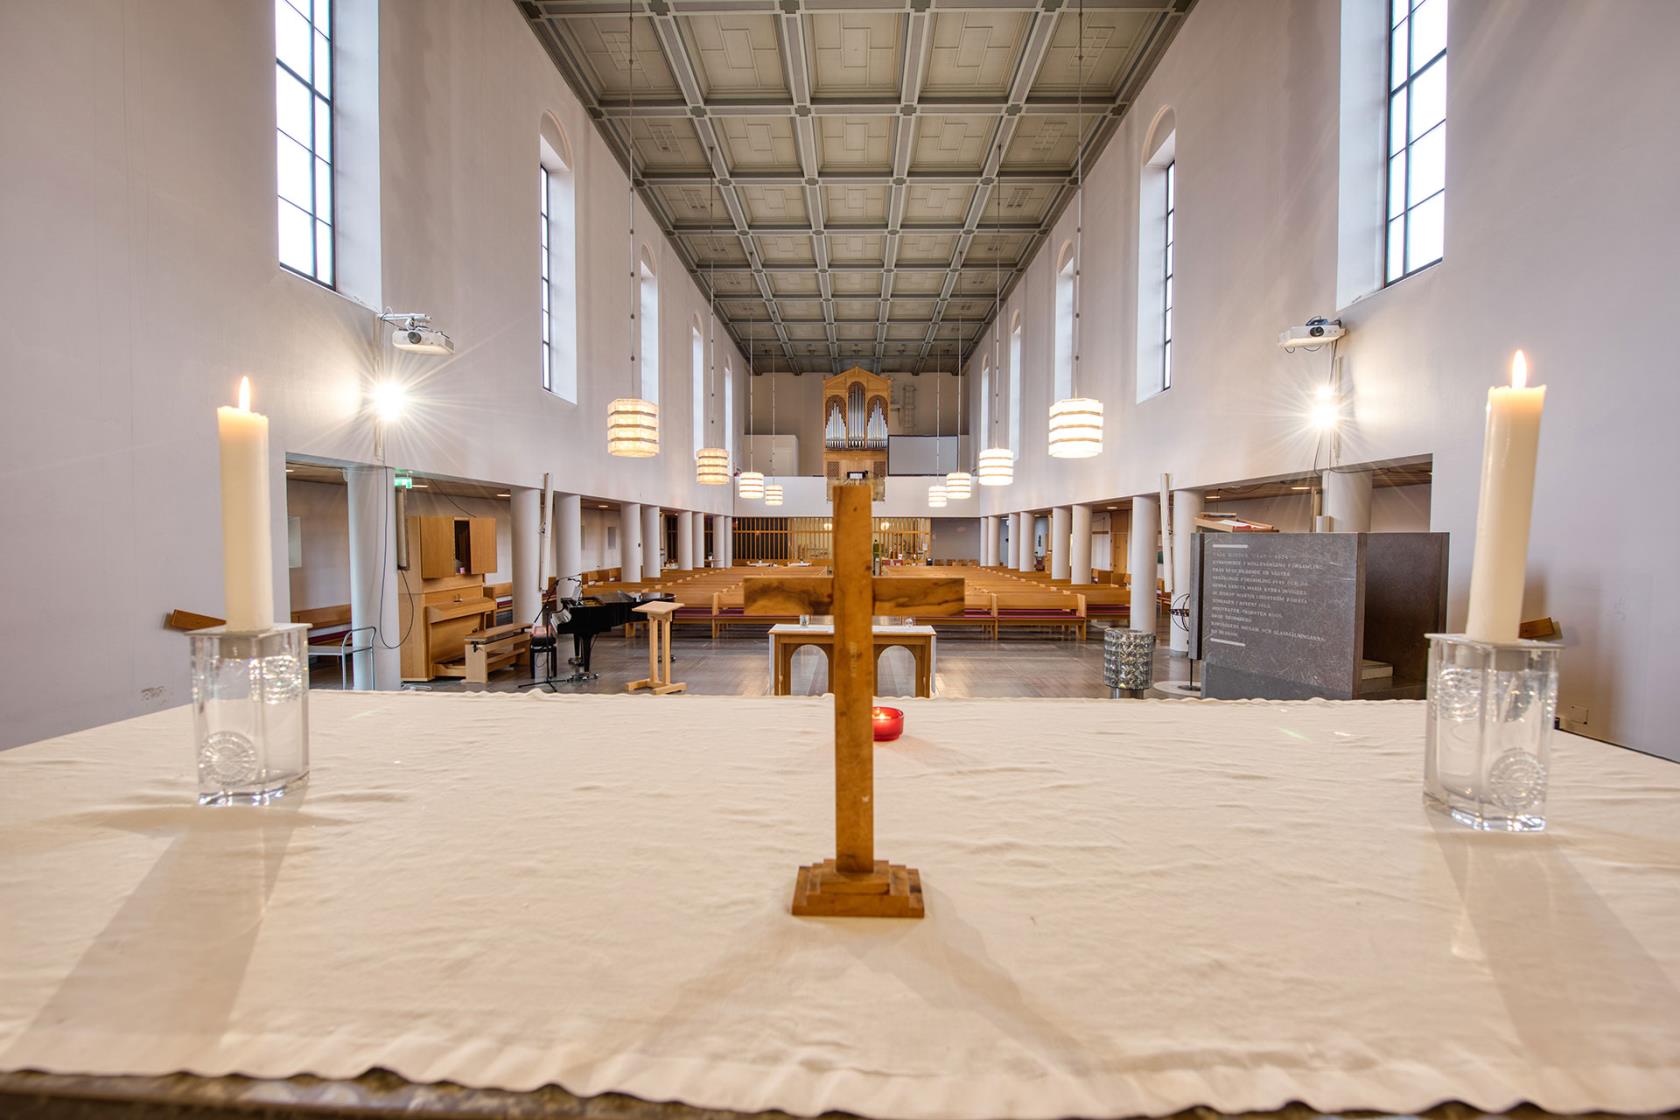 Närbild på altare med vit duk, ljus och kors. Framför alltaret breder ett avlångt kyrkorum ut sig med vita väggar, höga fönster och bänkar i trä.